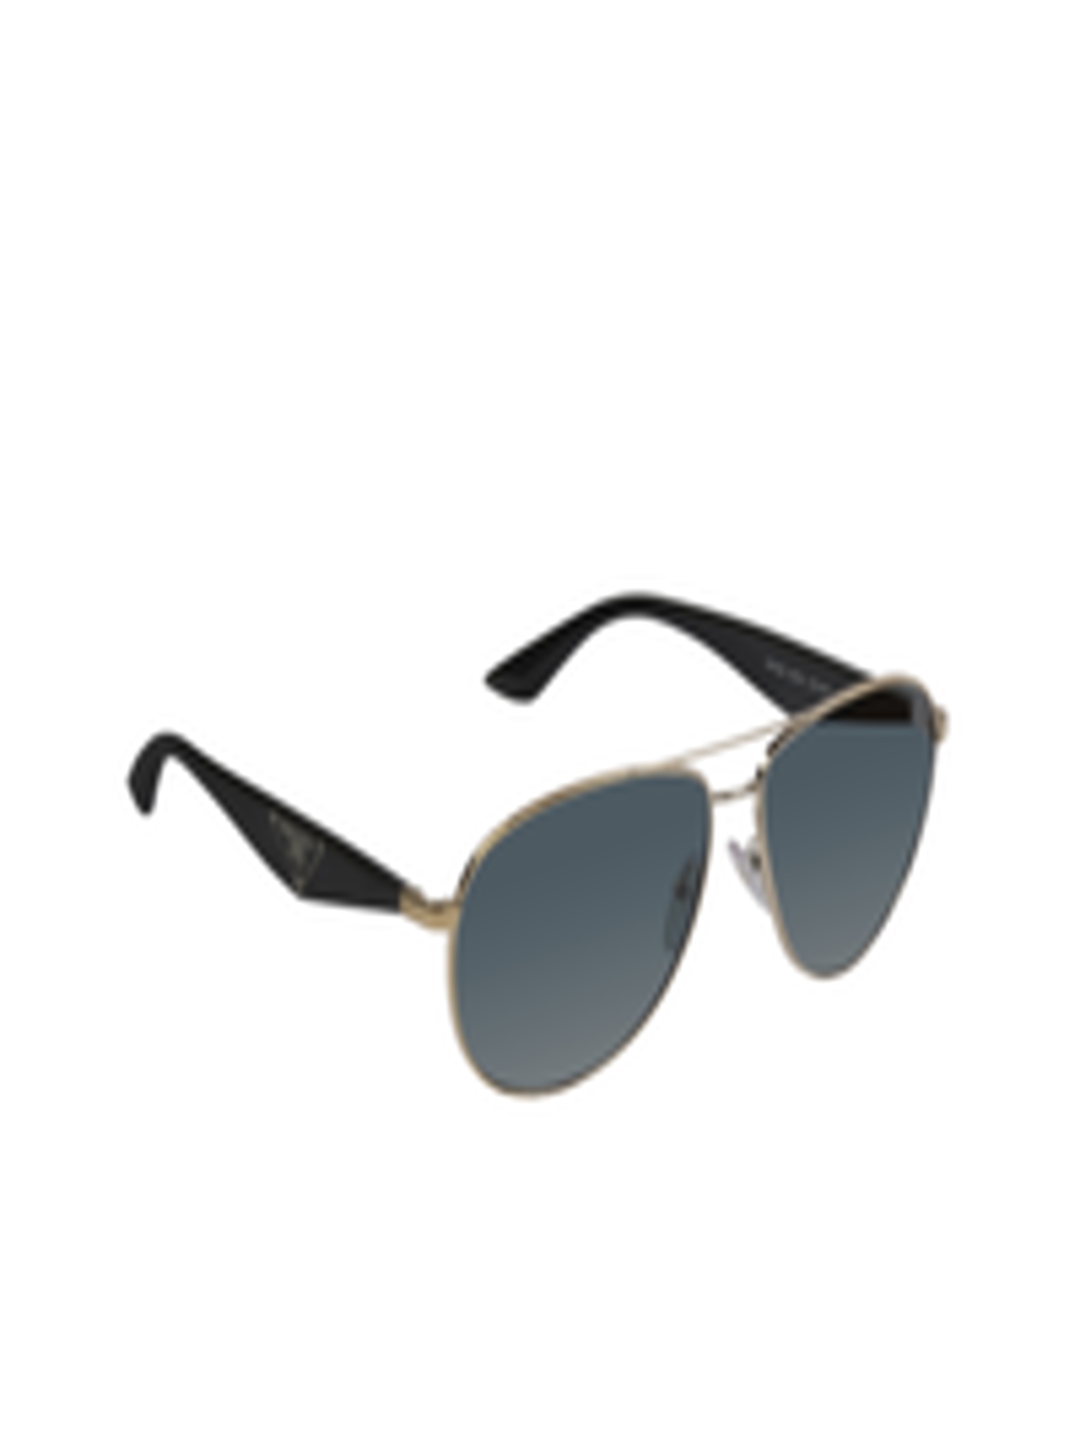 Buy Prada Unisex Aviator Sunglasses PR53QS - Sunglasses for Unisex